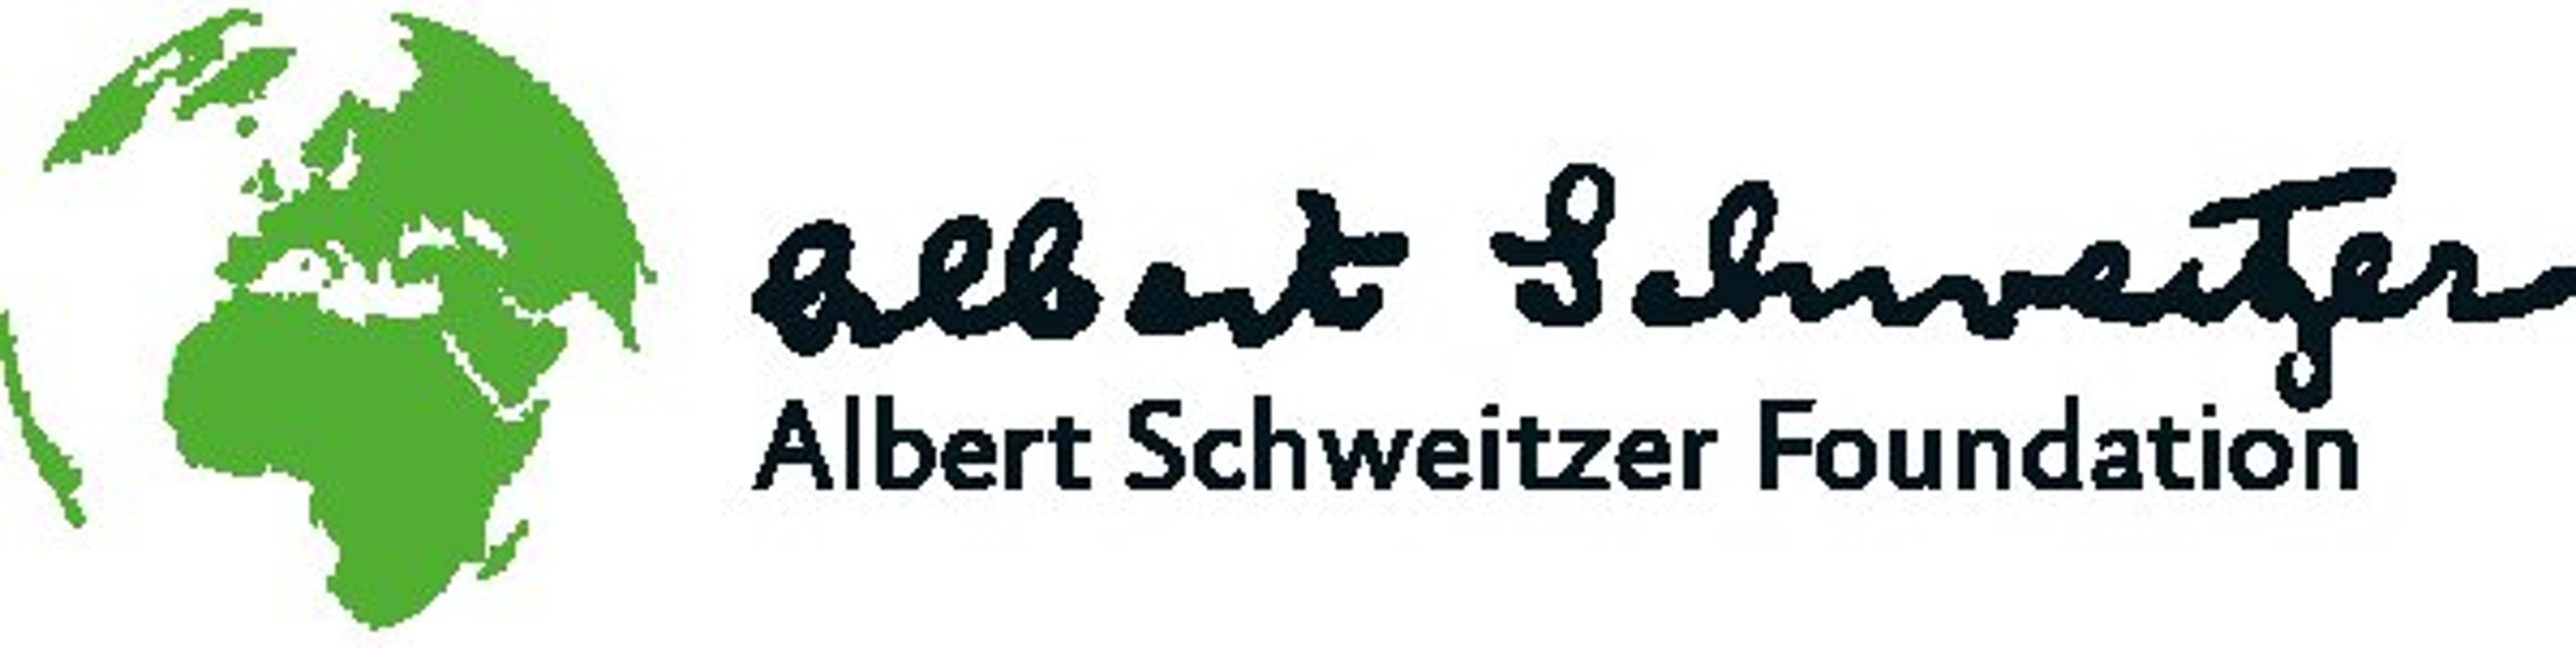 Albert Schweitzer Foundation